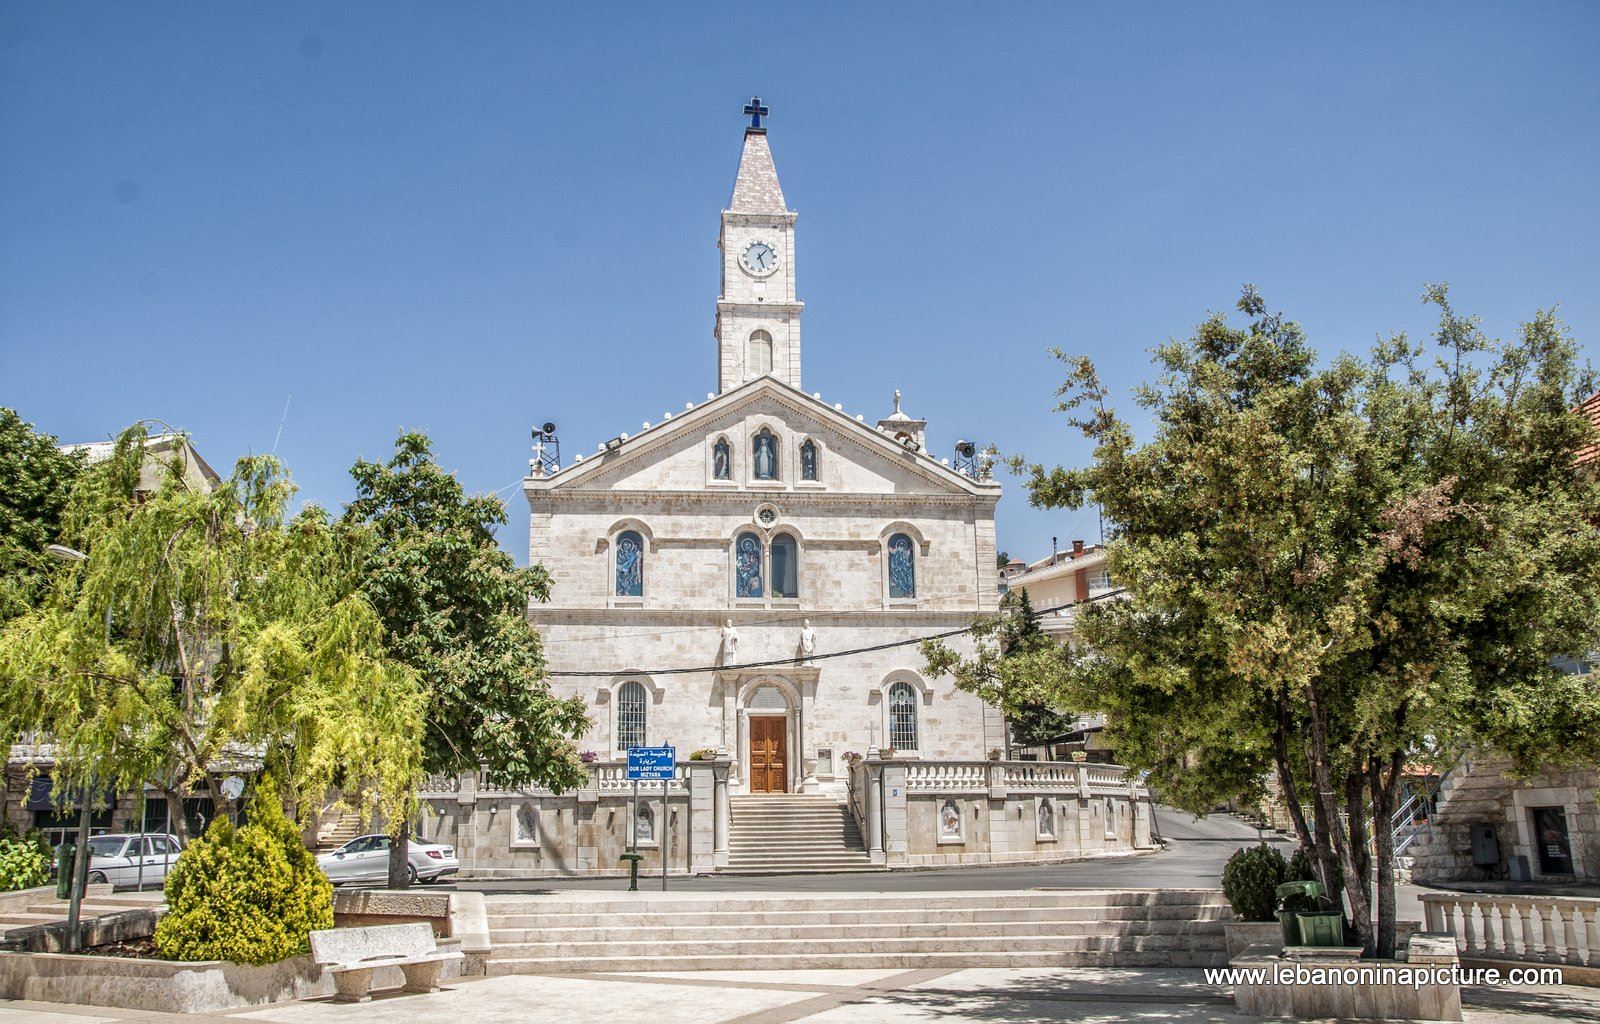 El Sayde Church (Mizyara, North Lebanon)